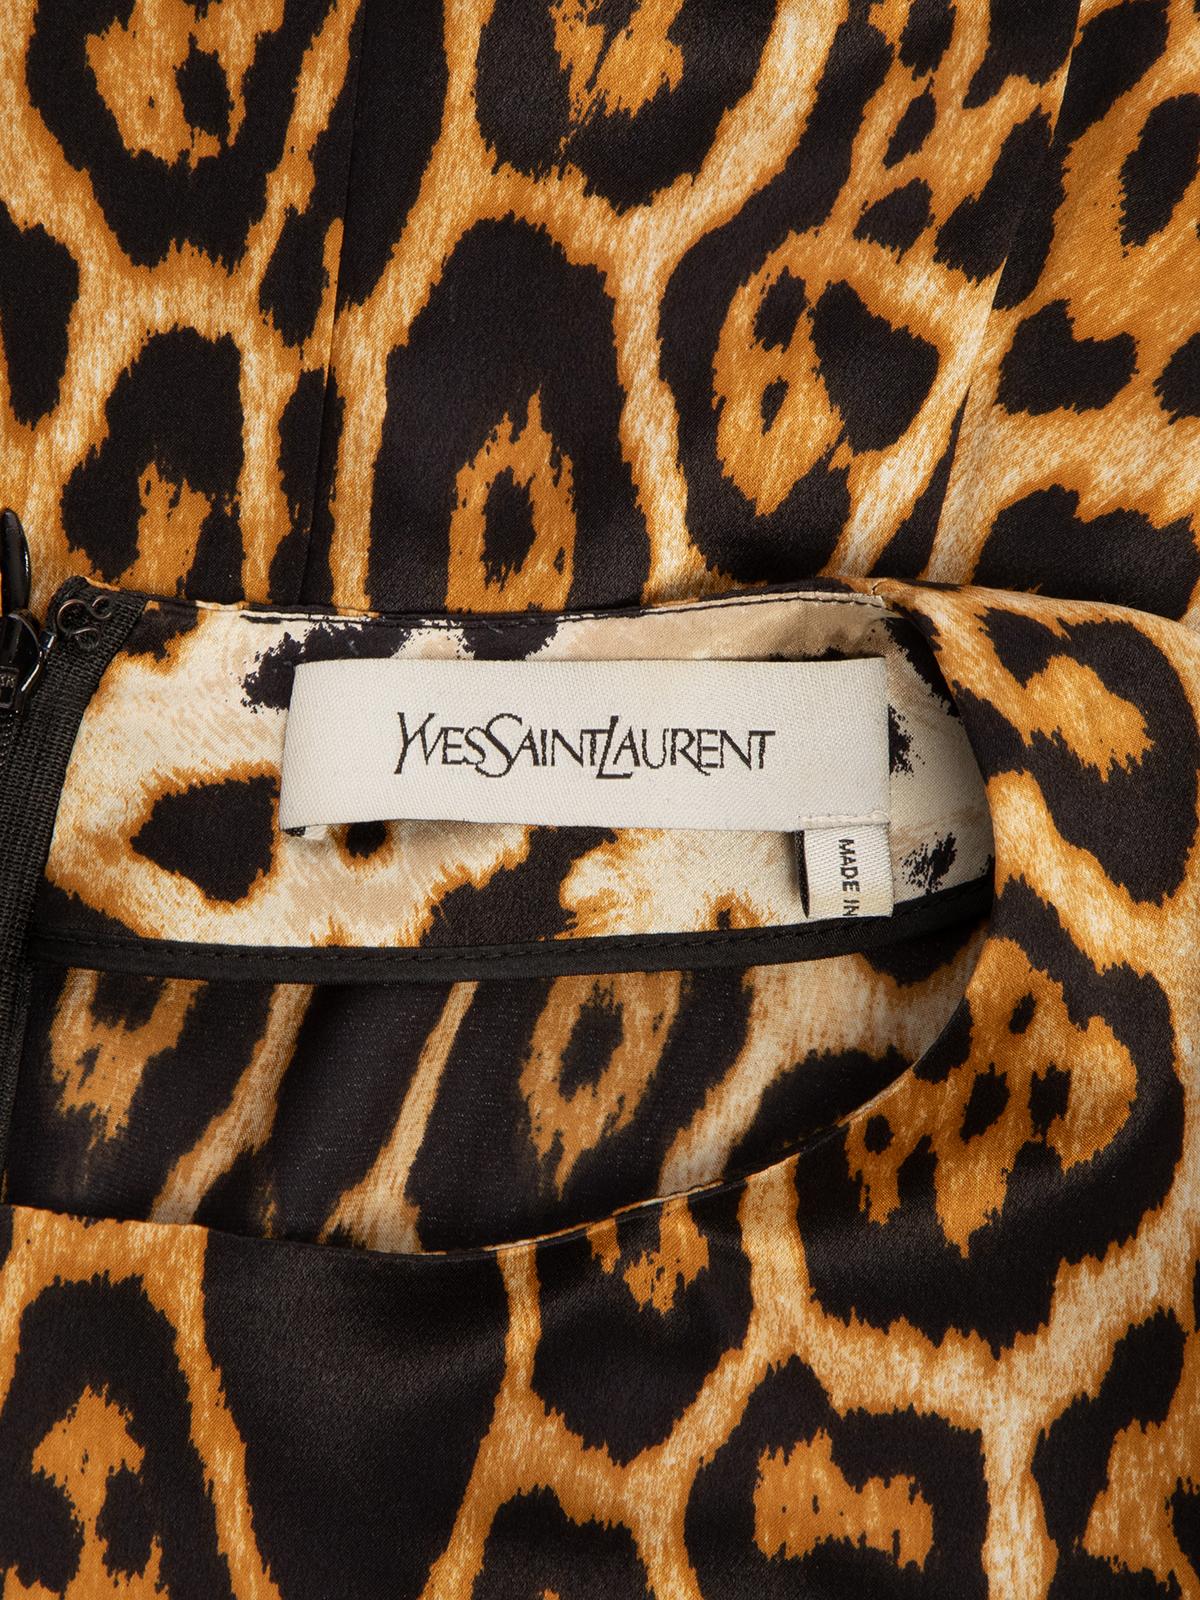 Pre-Loved Yves Saint Laurent Women's Leopard Print Midi Dress 1